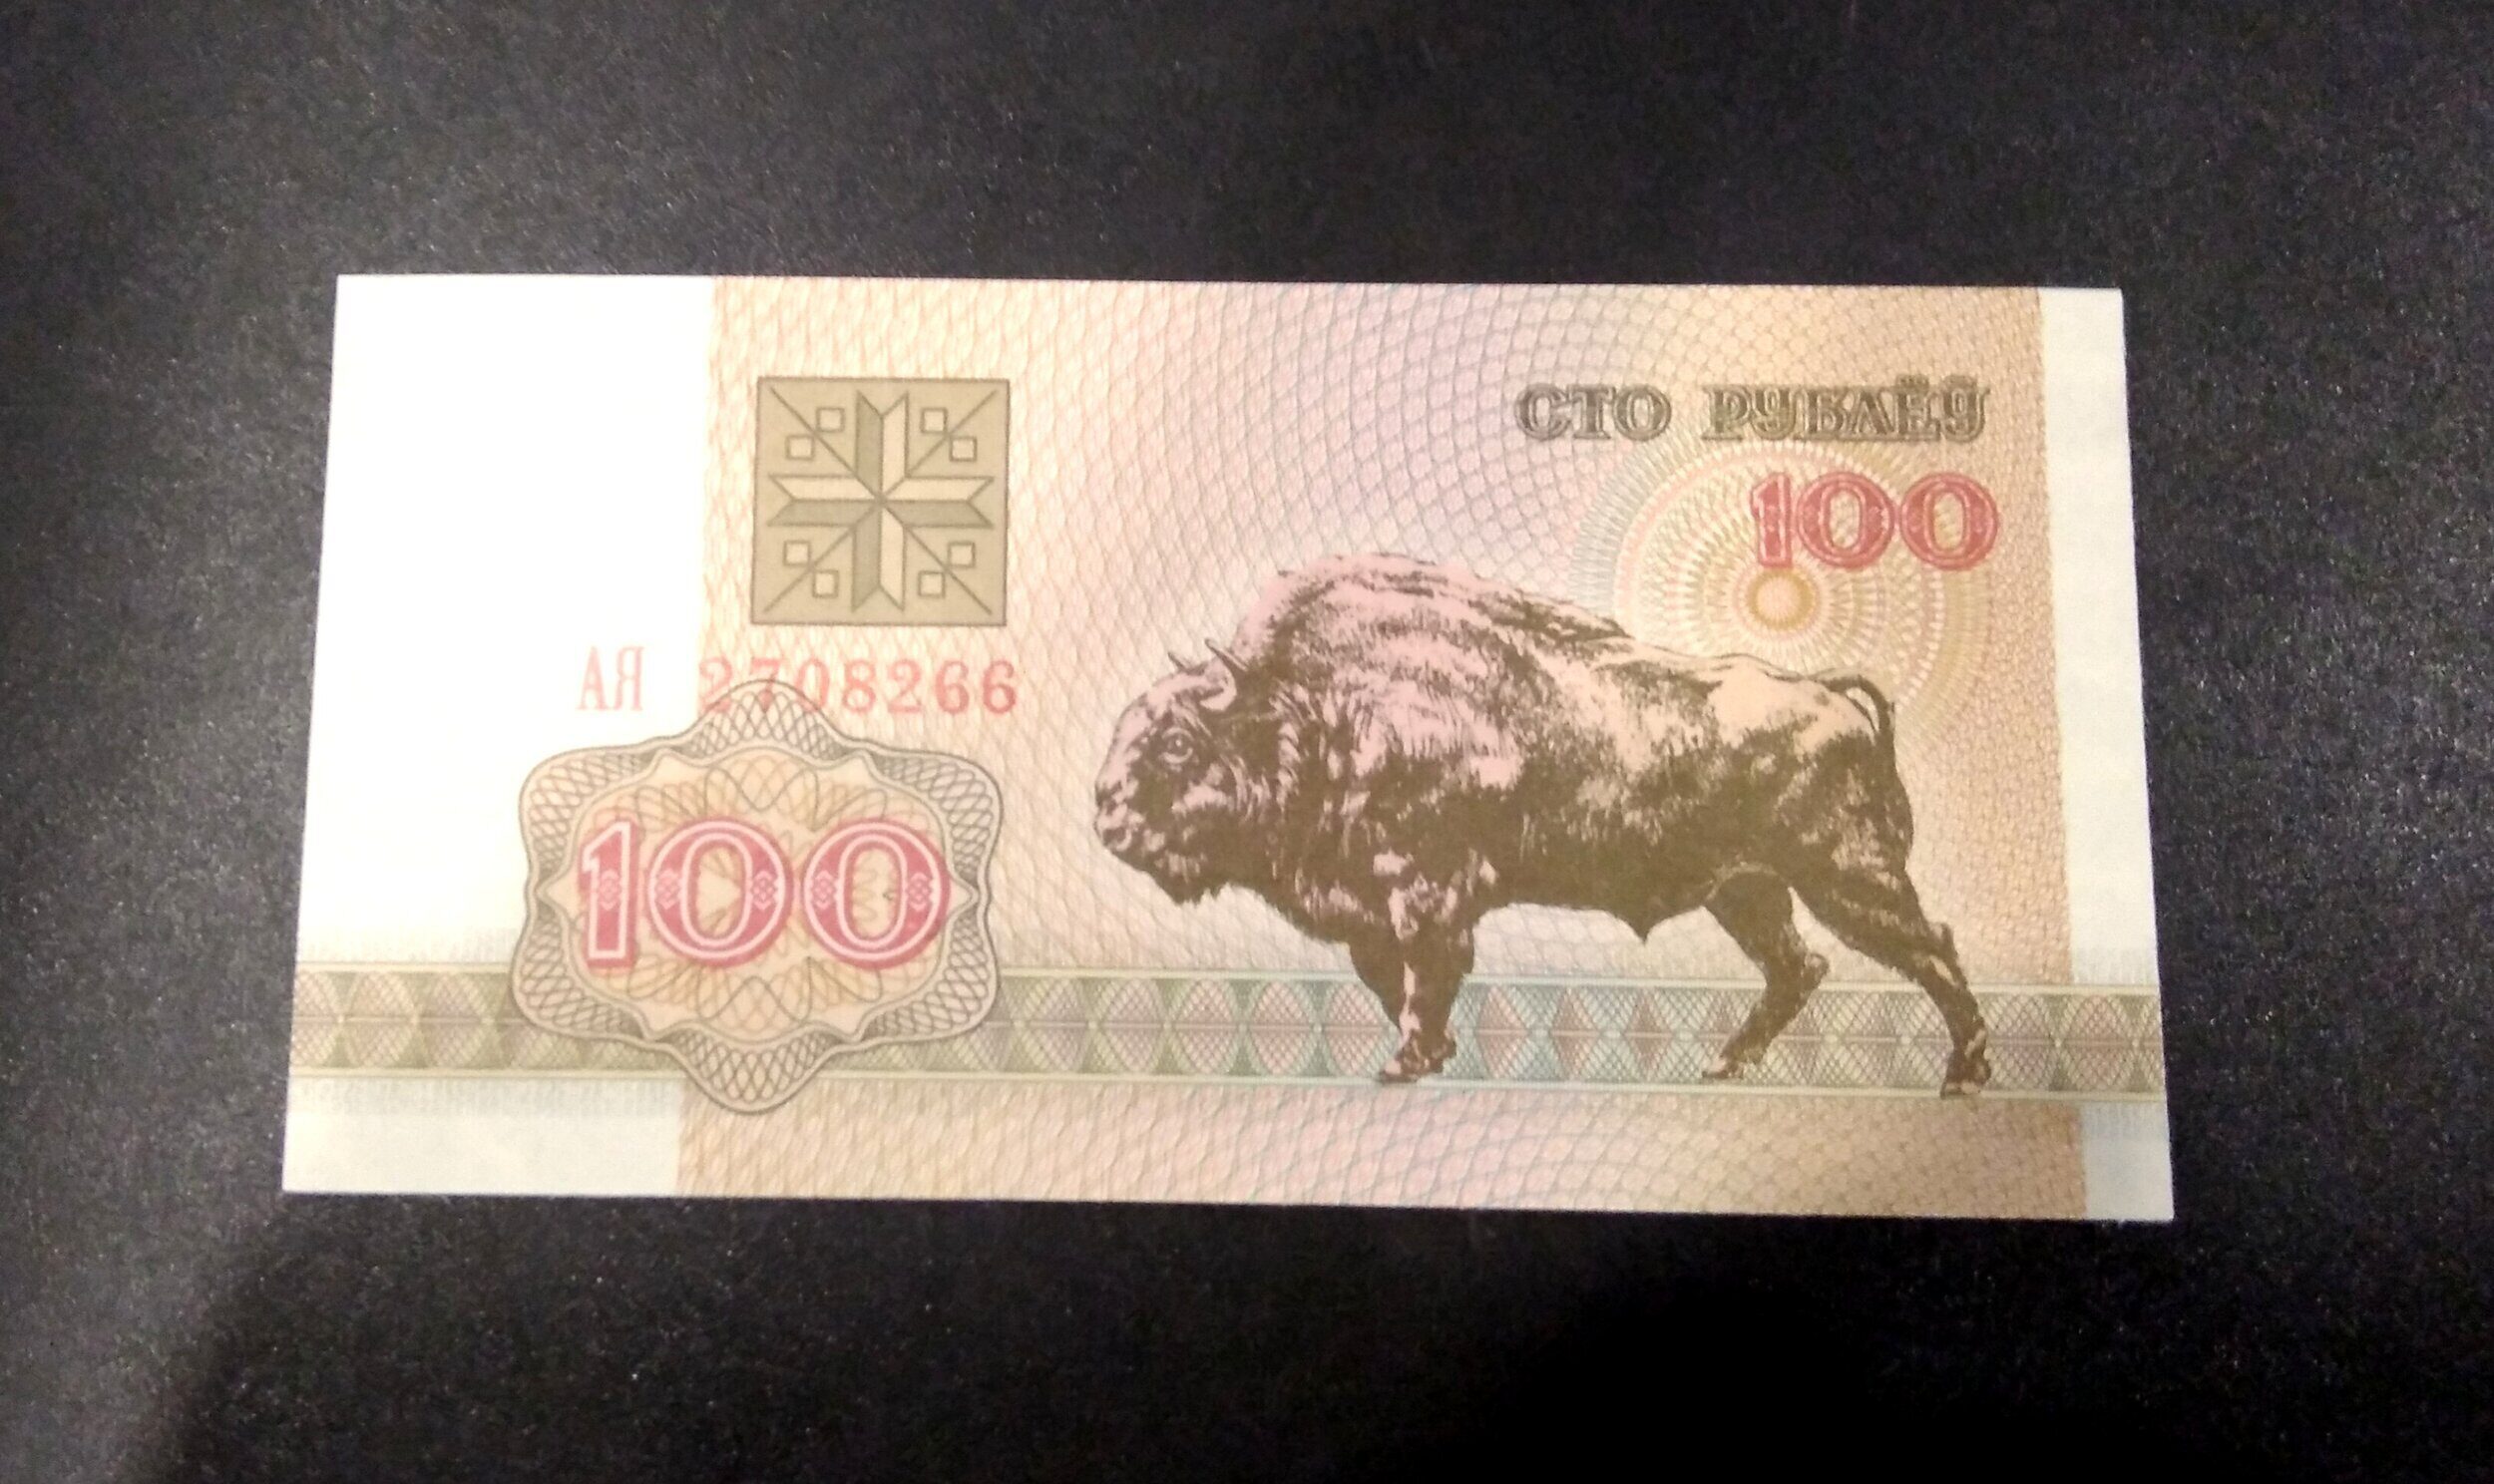 740 белорусских рублей